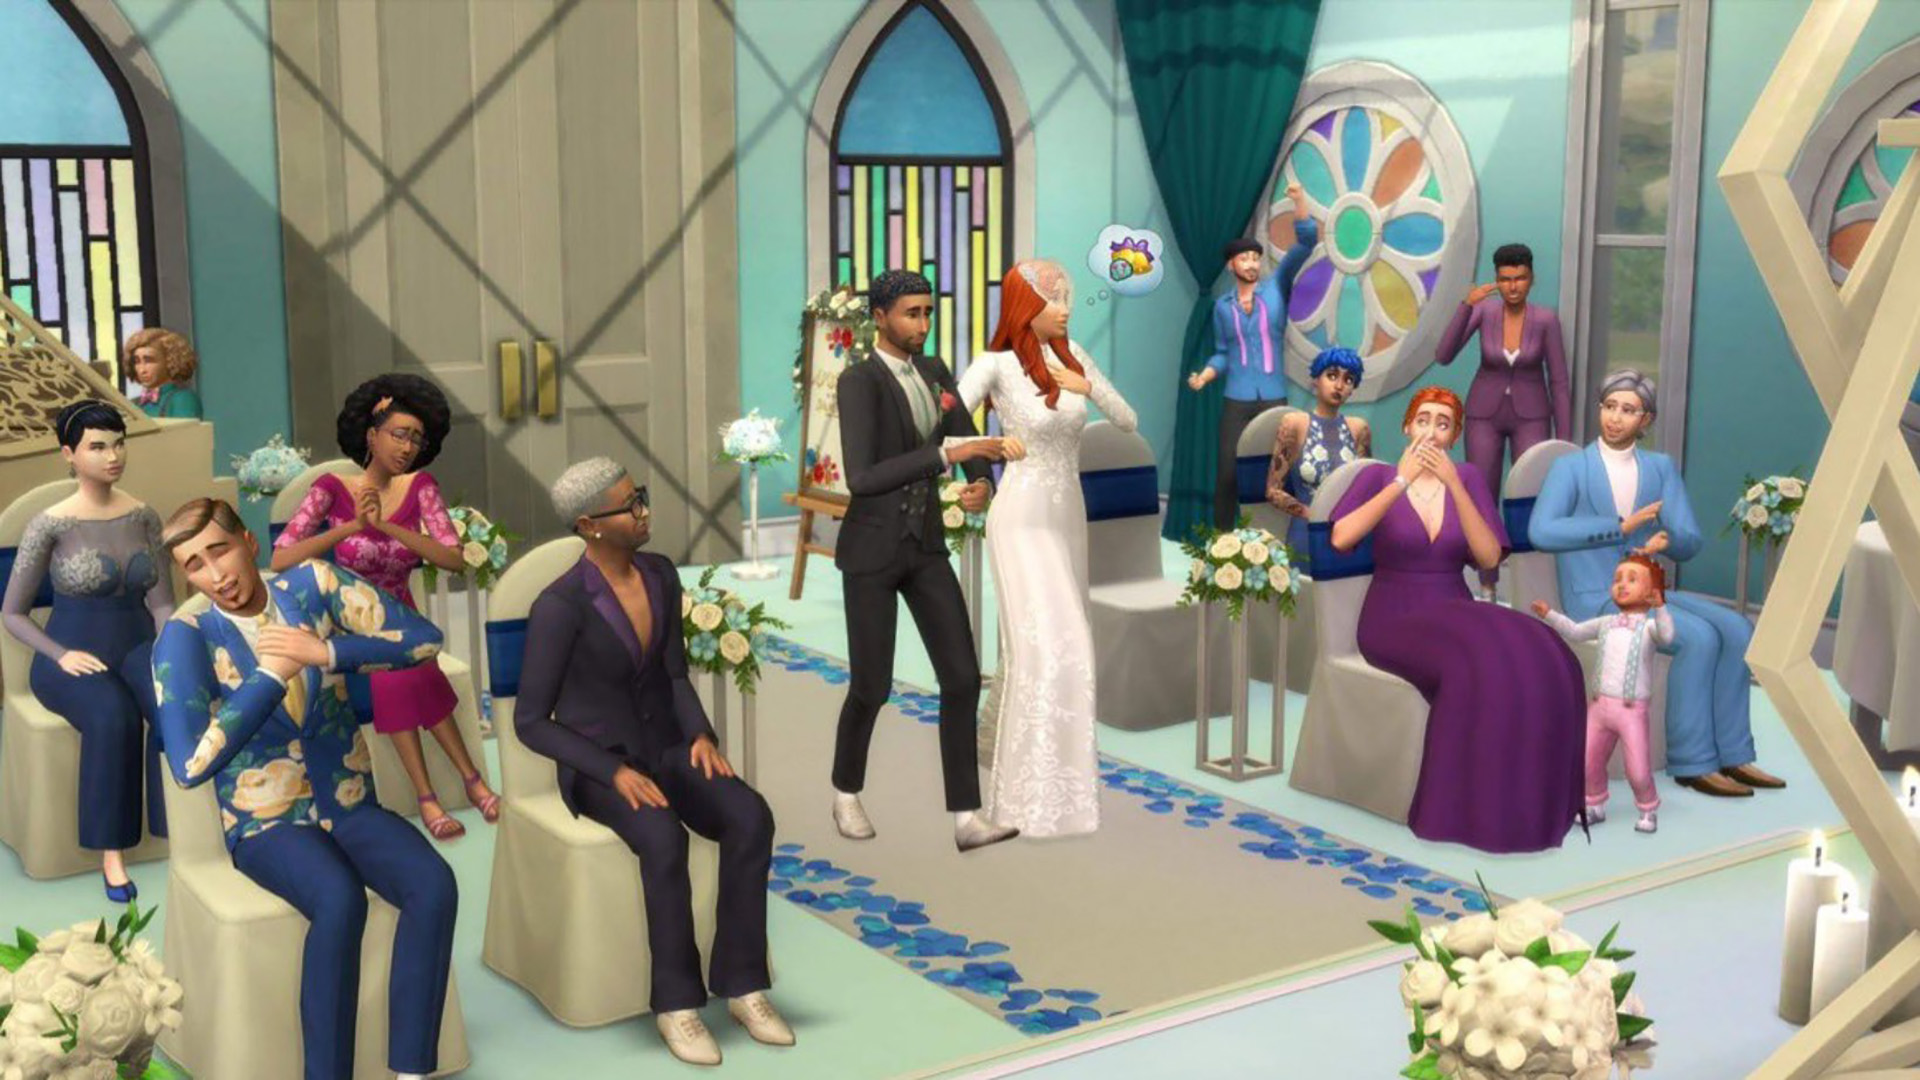 หลุดข้อมูลเนื้อหาเสริมใหม่ของ The Sims 4 ที่มาในธีมแต่งงาน